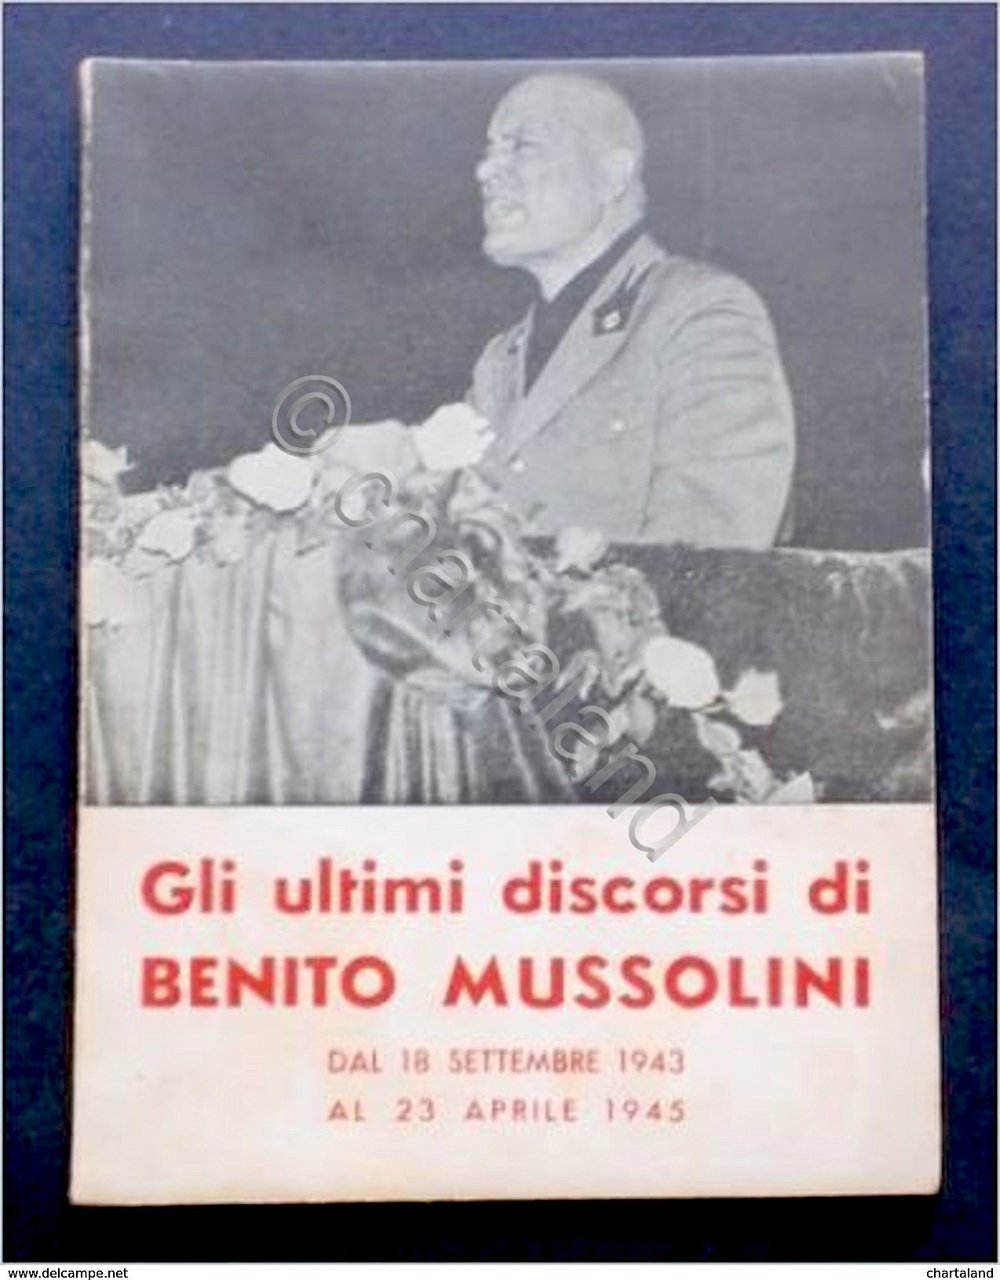 Gli ultimi discorsi di Benito Mussolini 1943-1945 - ed. 1950 …